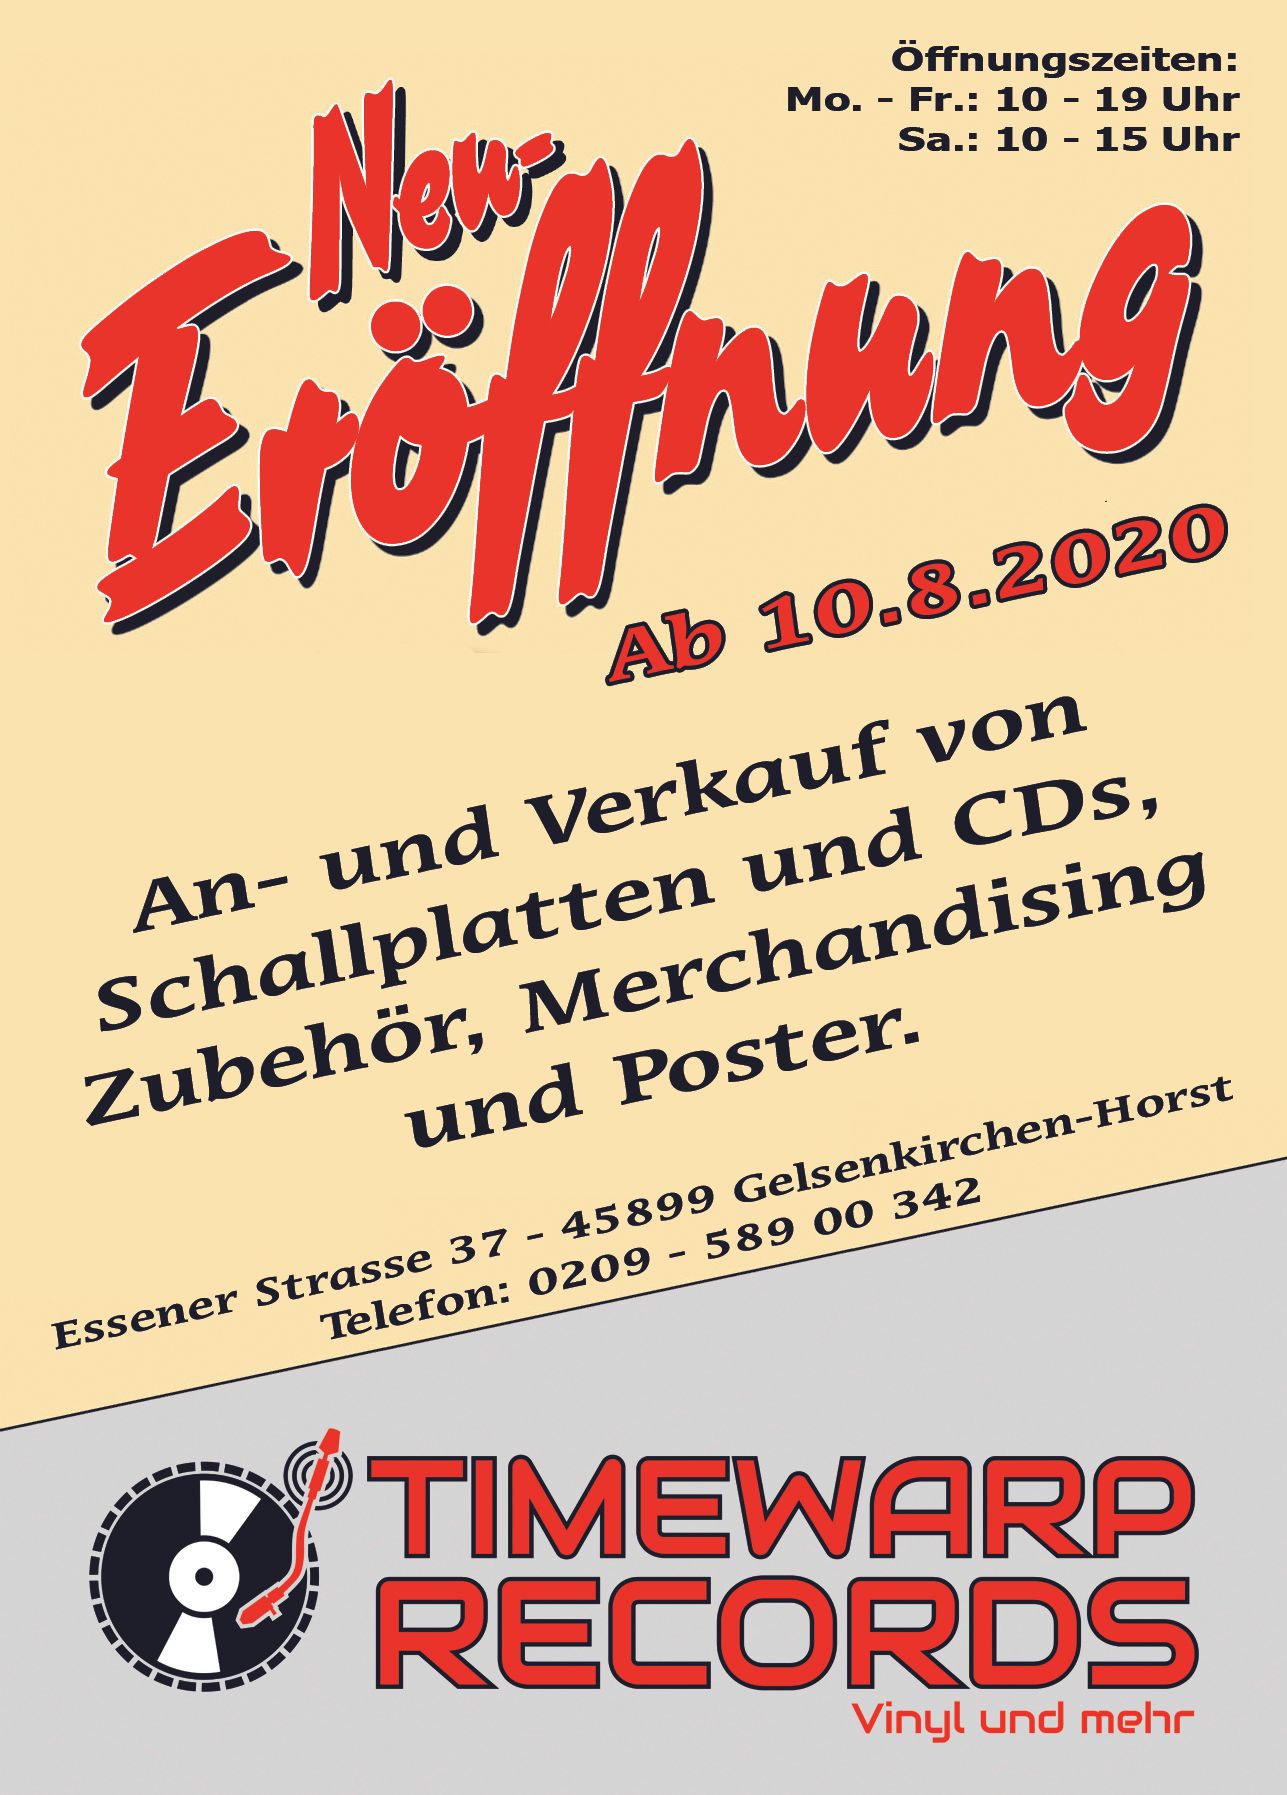 Timewarp Records eröffnet am 10. August in Gelsenkirchen